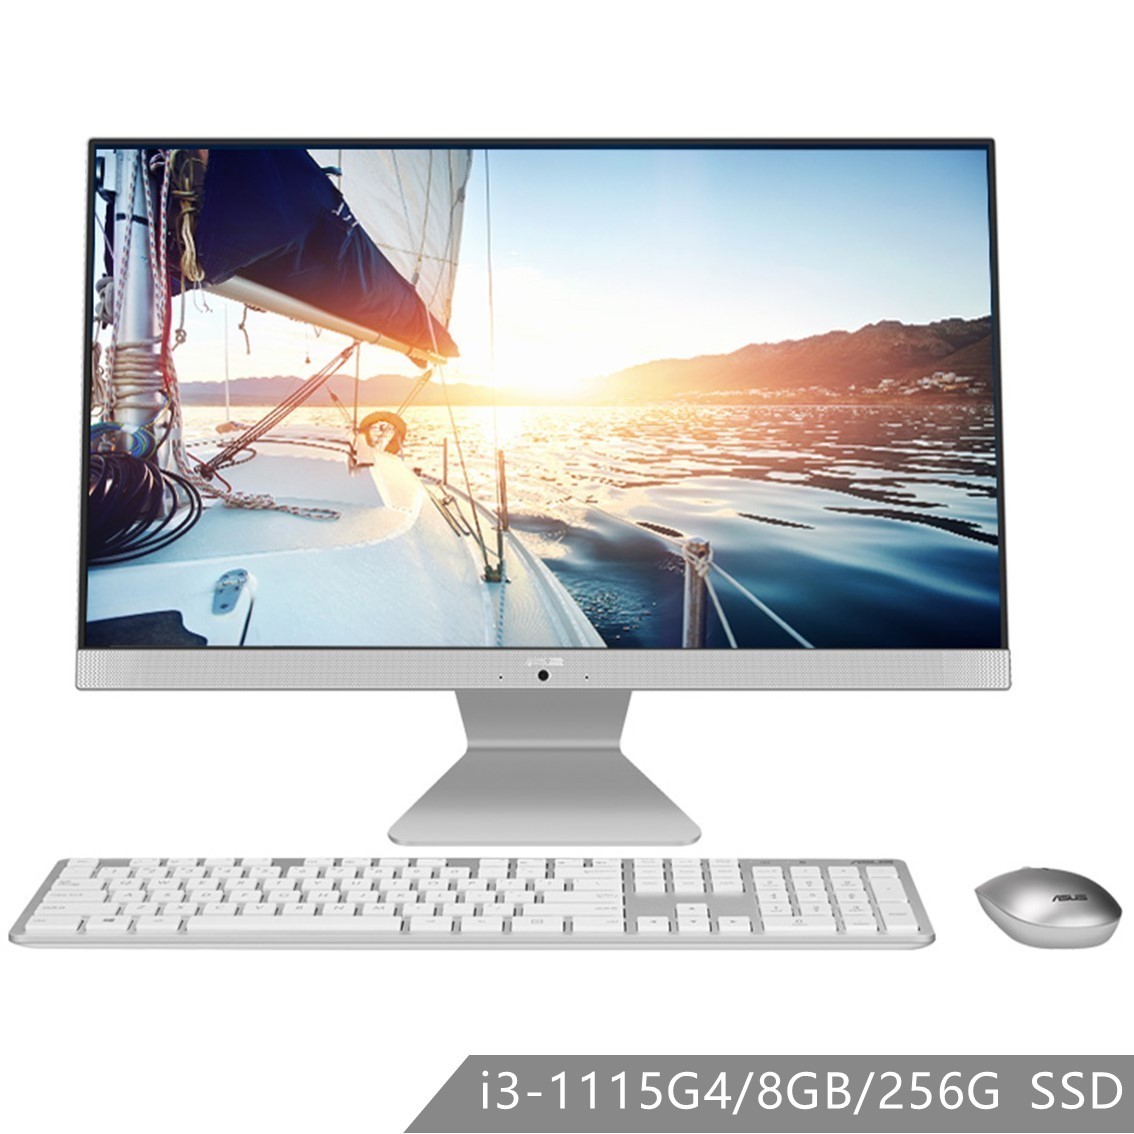 猎鹰V4 V4000 23.8英寸 家用办公一体机电脑（intel 11代i3-1115G4/ 8G/ 256G SSD）